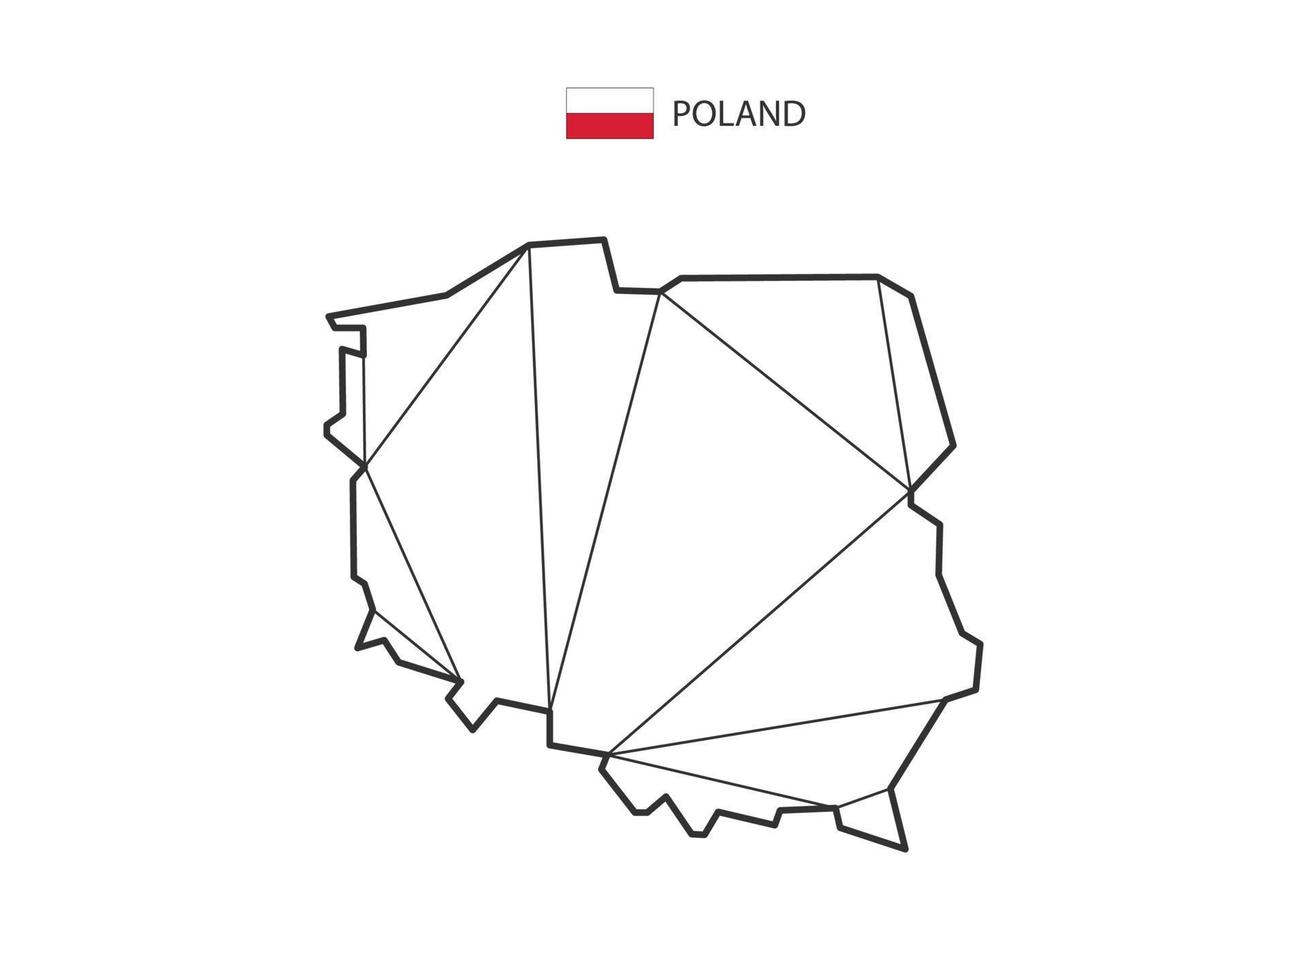 mosaico triángulos mapa estilo de polonia aislado sobre un fondo blanco. diseño abstracto para vectores. vector